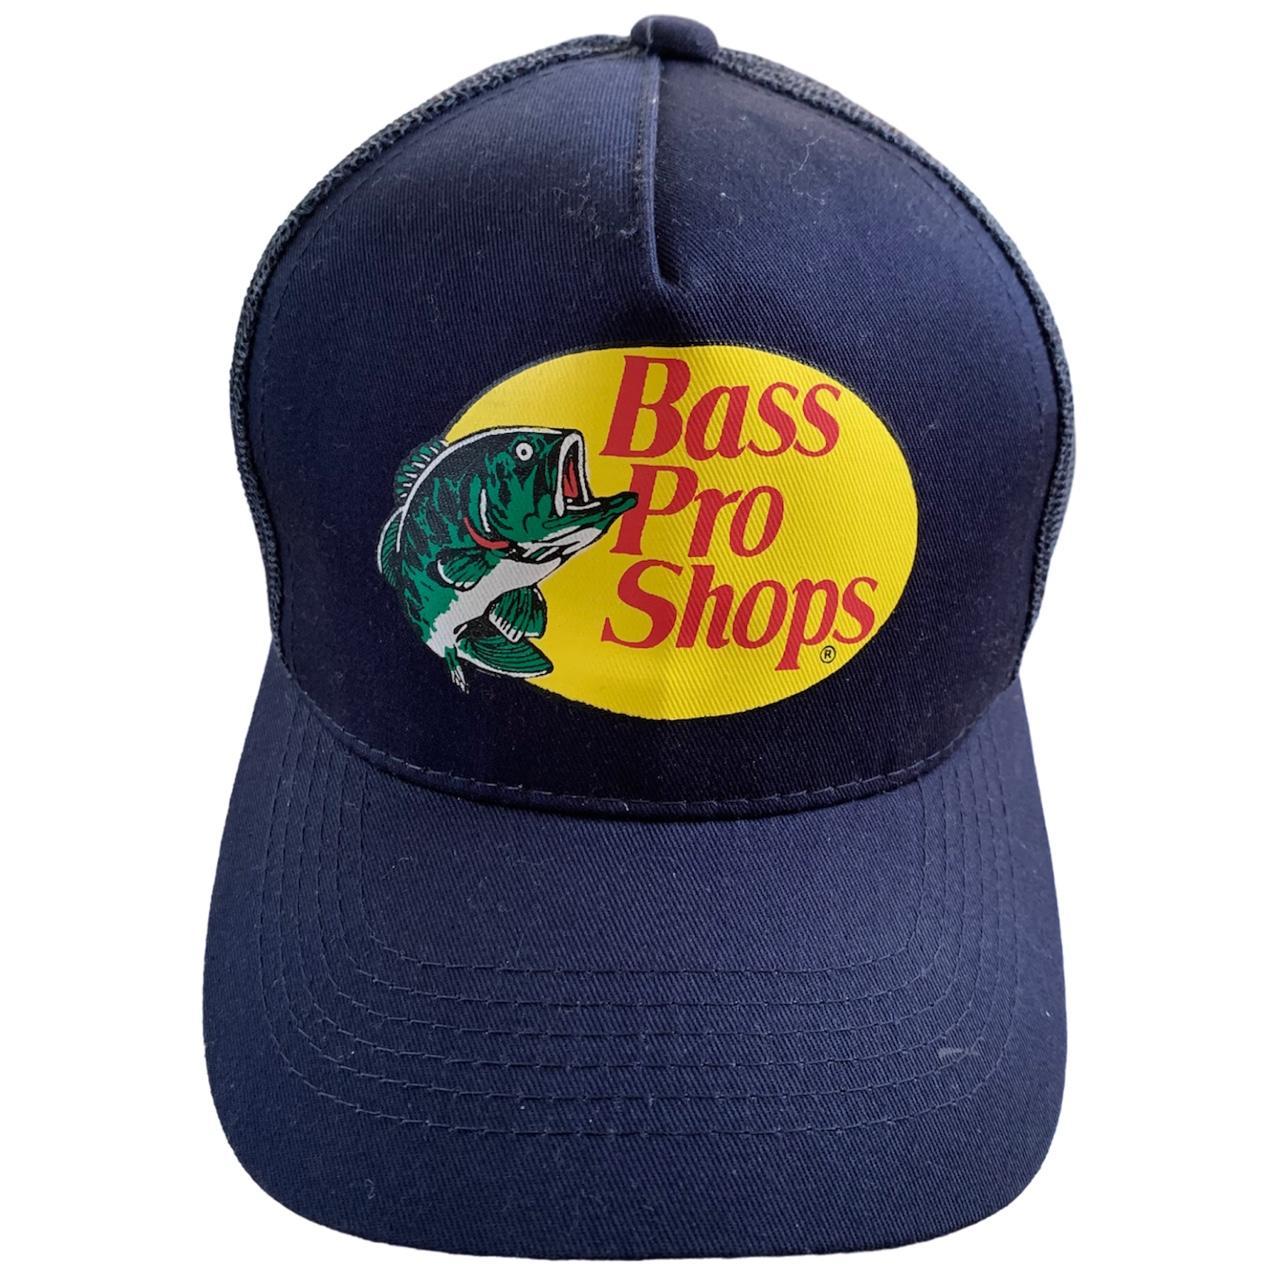 bass pro shops navy blue mesh trucker hat good - Depop